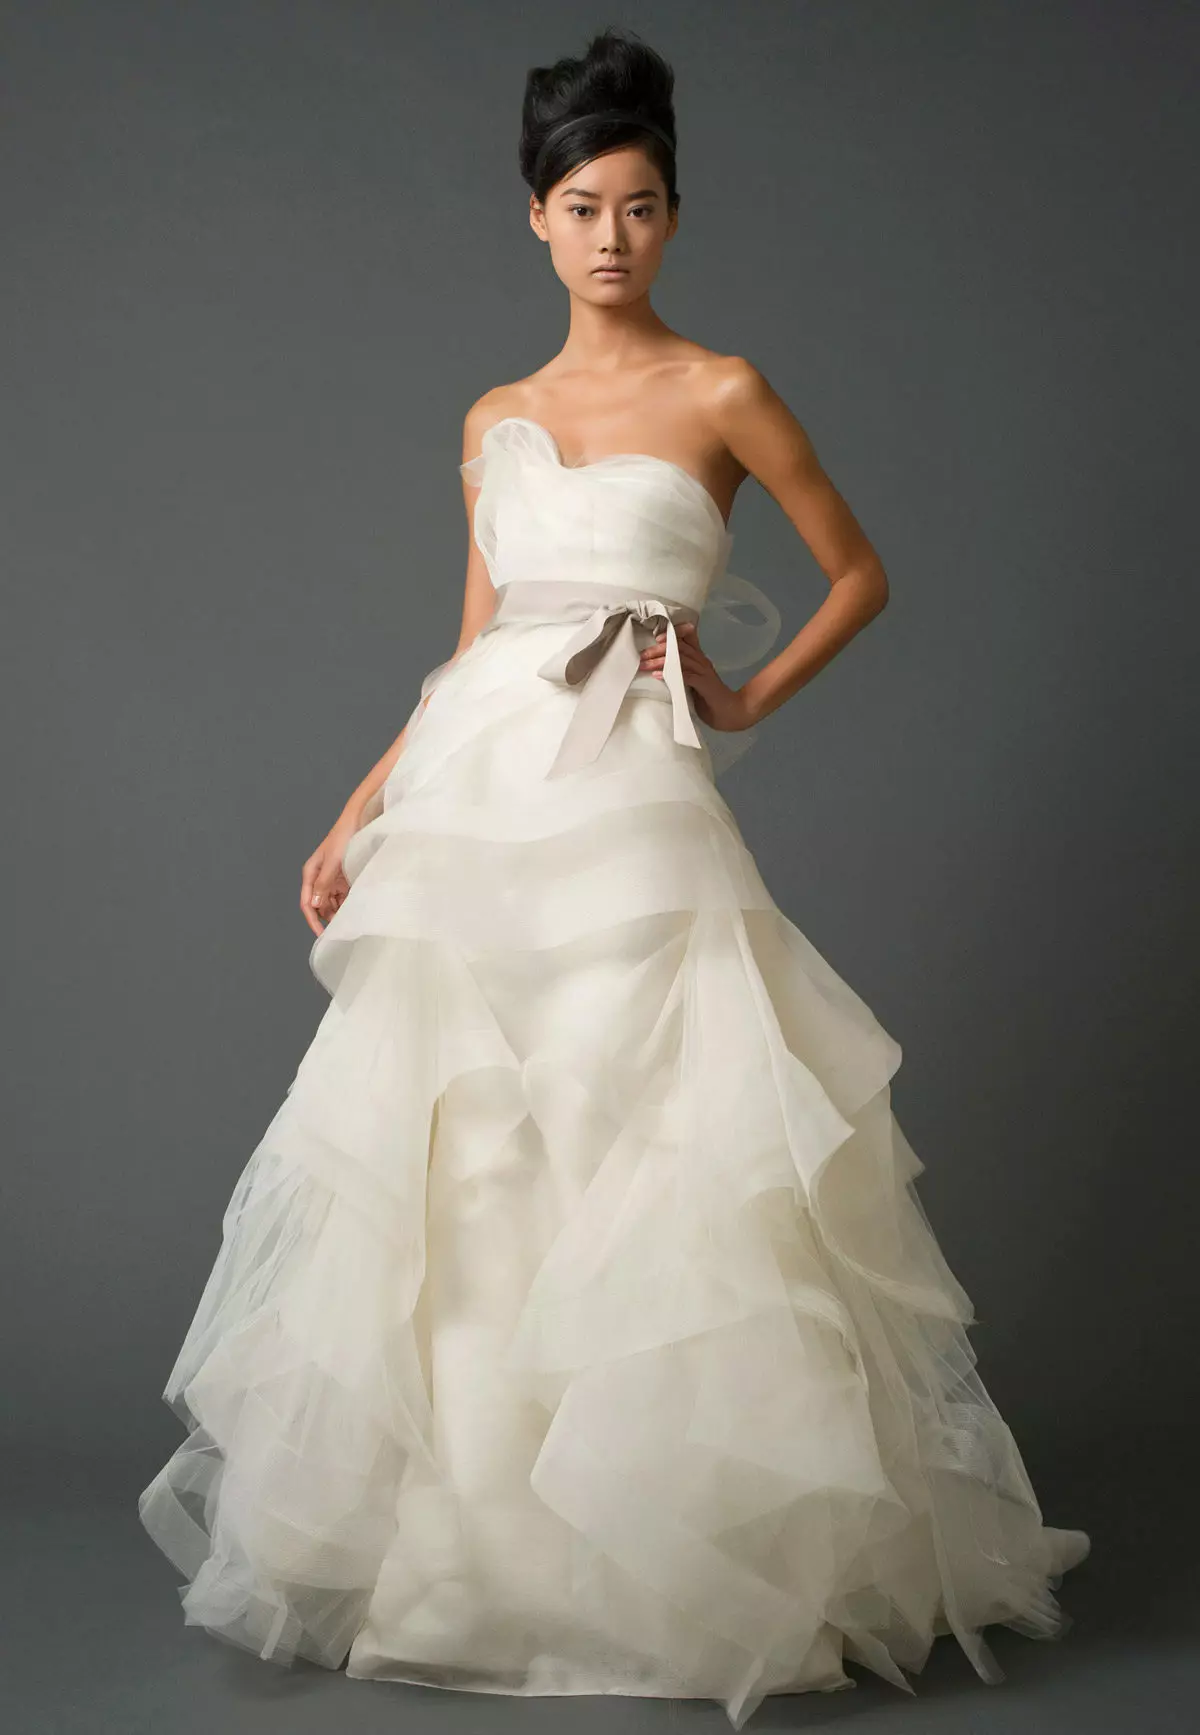 لباس عروسی از ایمان وونگ از مجموعه 2011 با کمربند رنگی